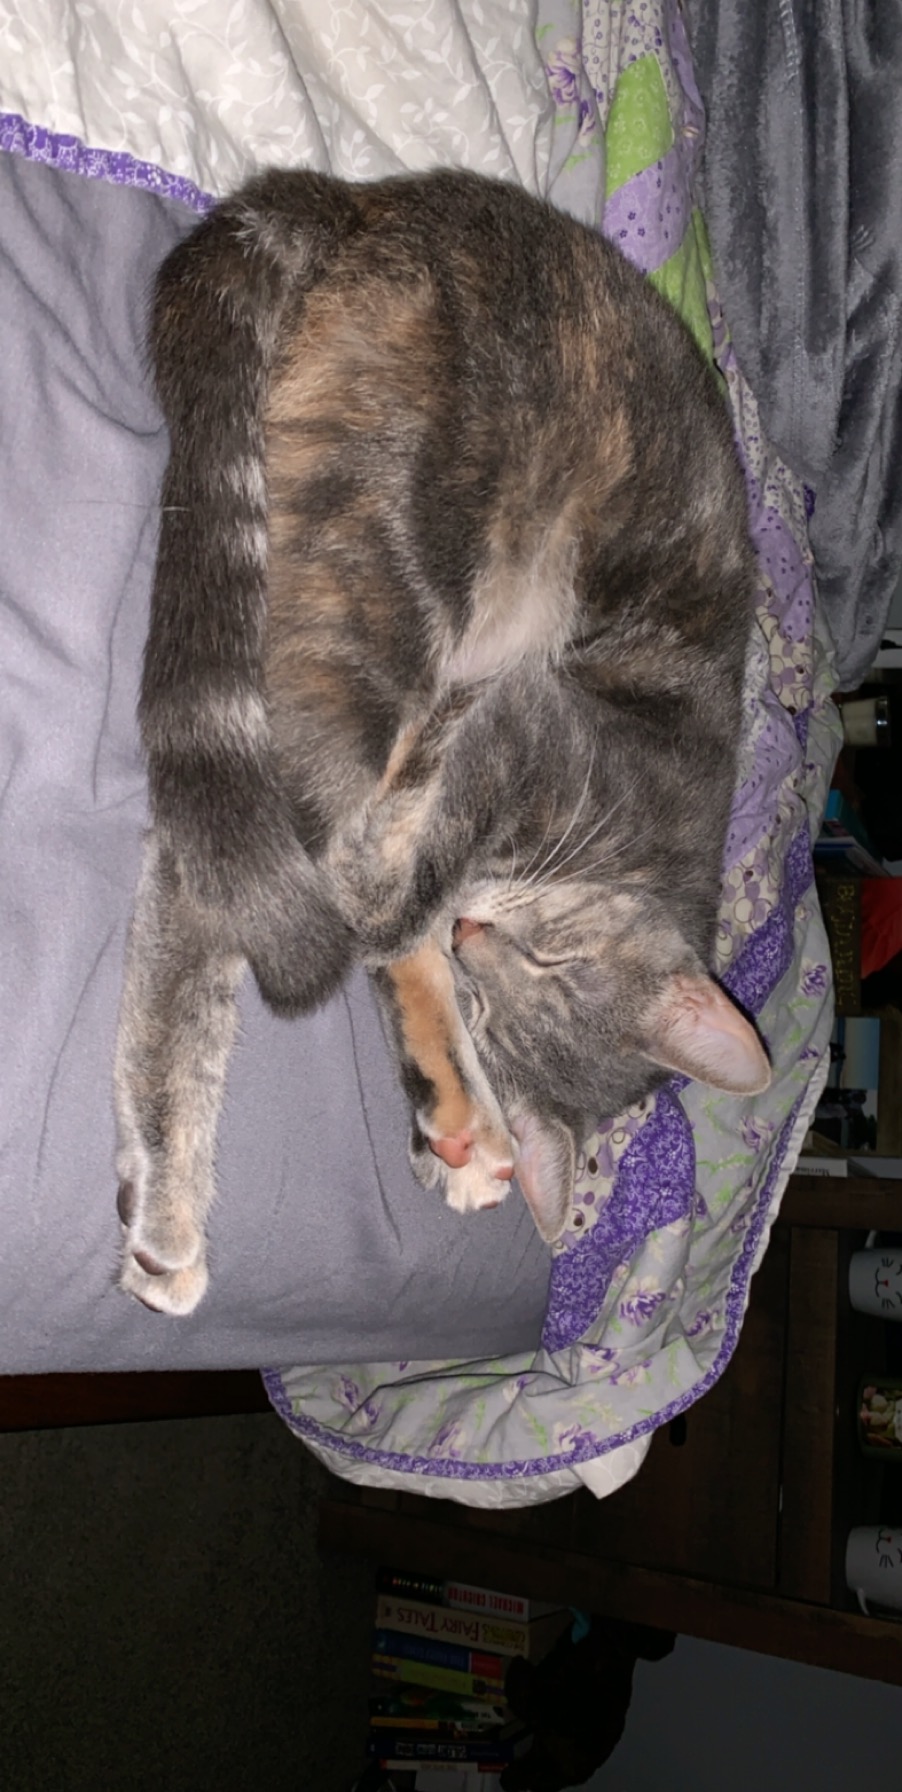 adoptable Cat in Valdosta,GA named Nymeria